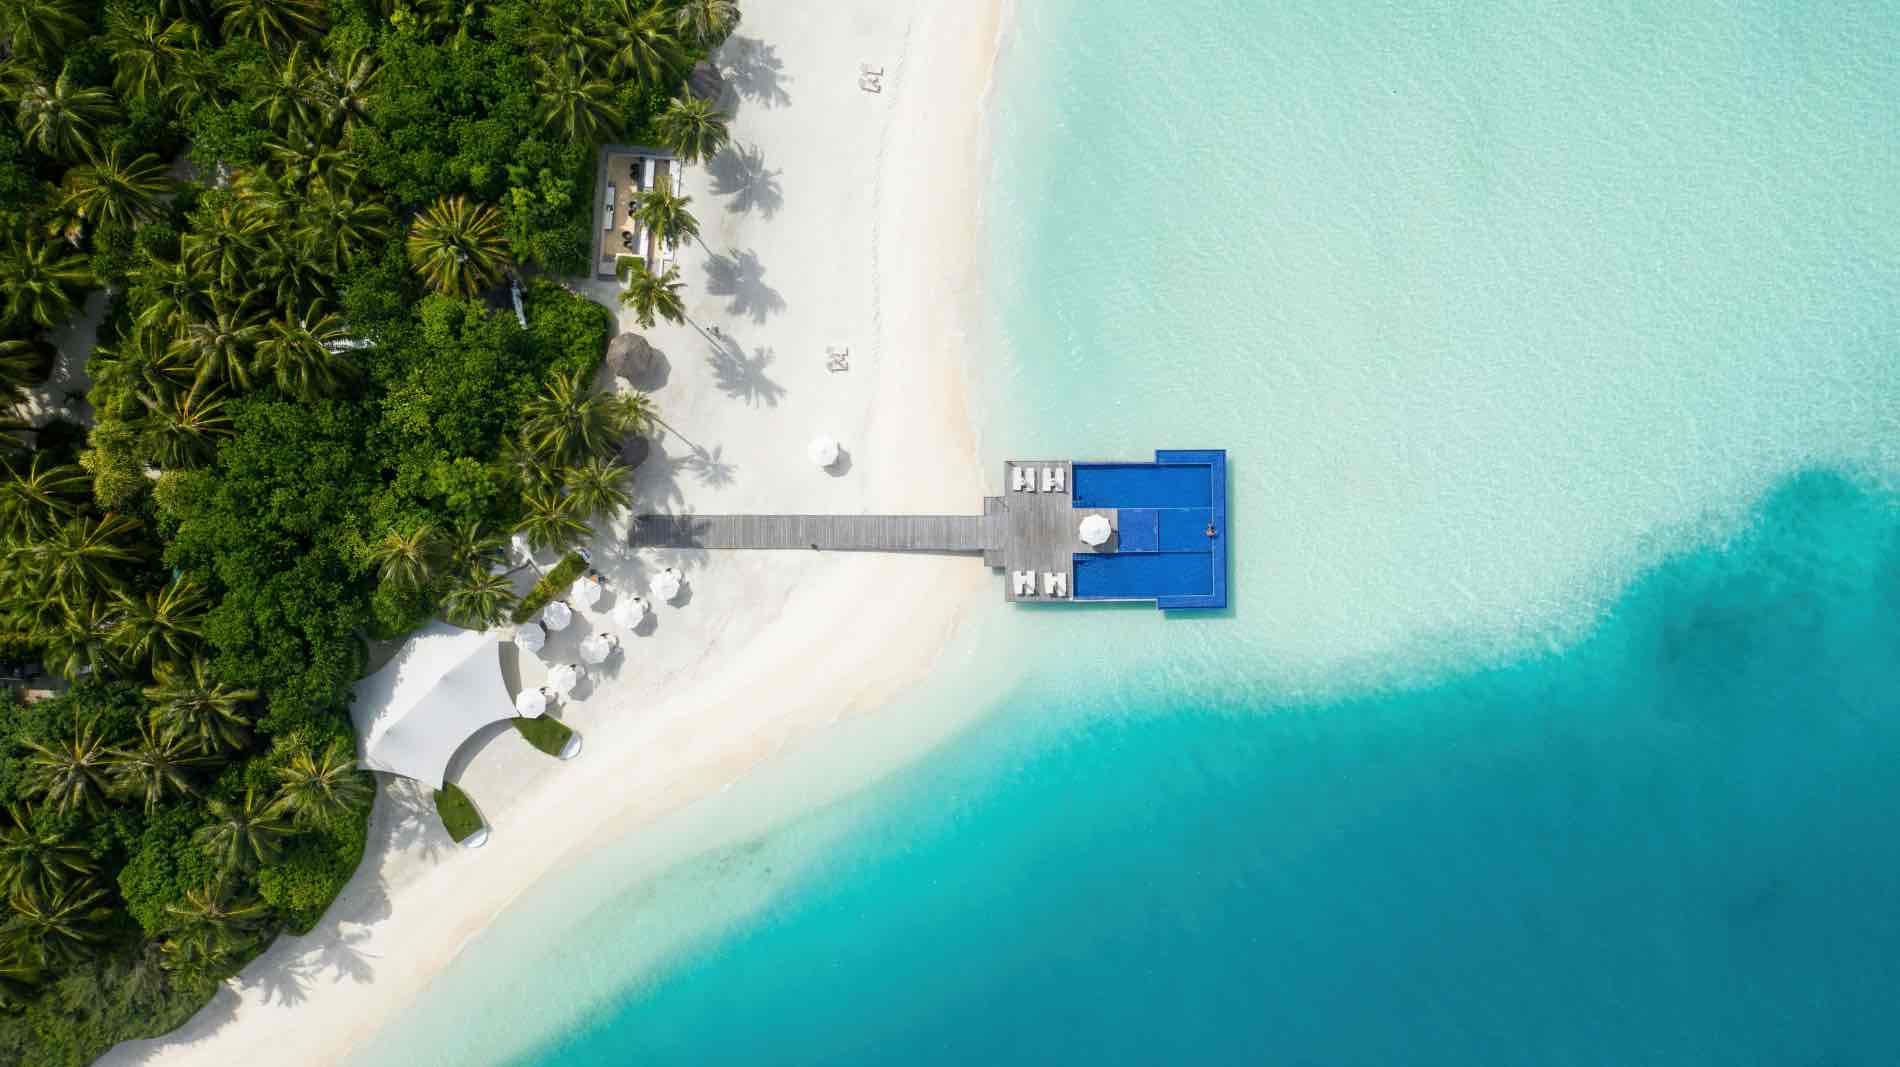 Drone view over the Maldives